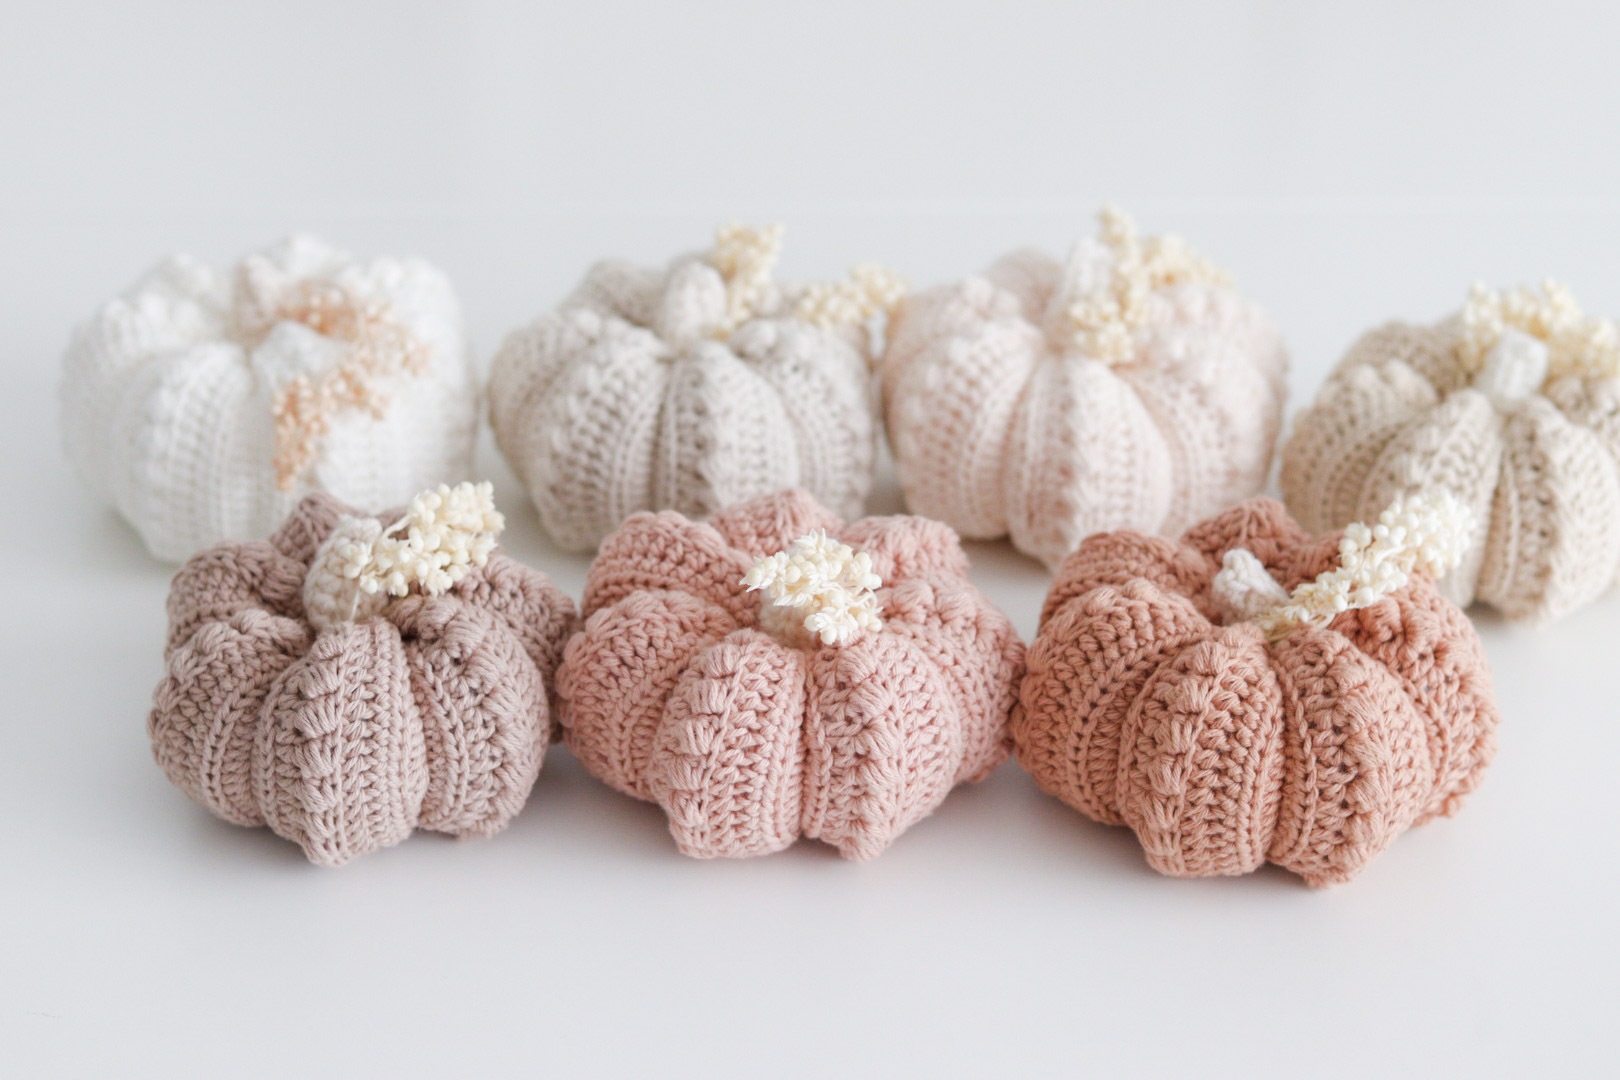 MATERIEL NECESSAIRE AU CROCHET - Crochet Pink Pumpkin